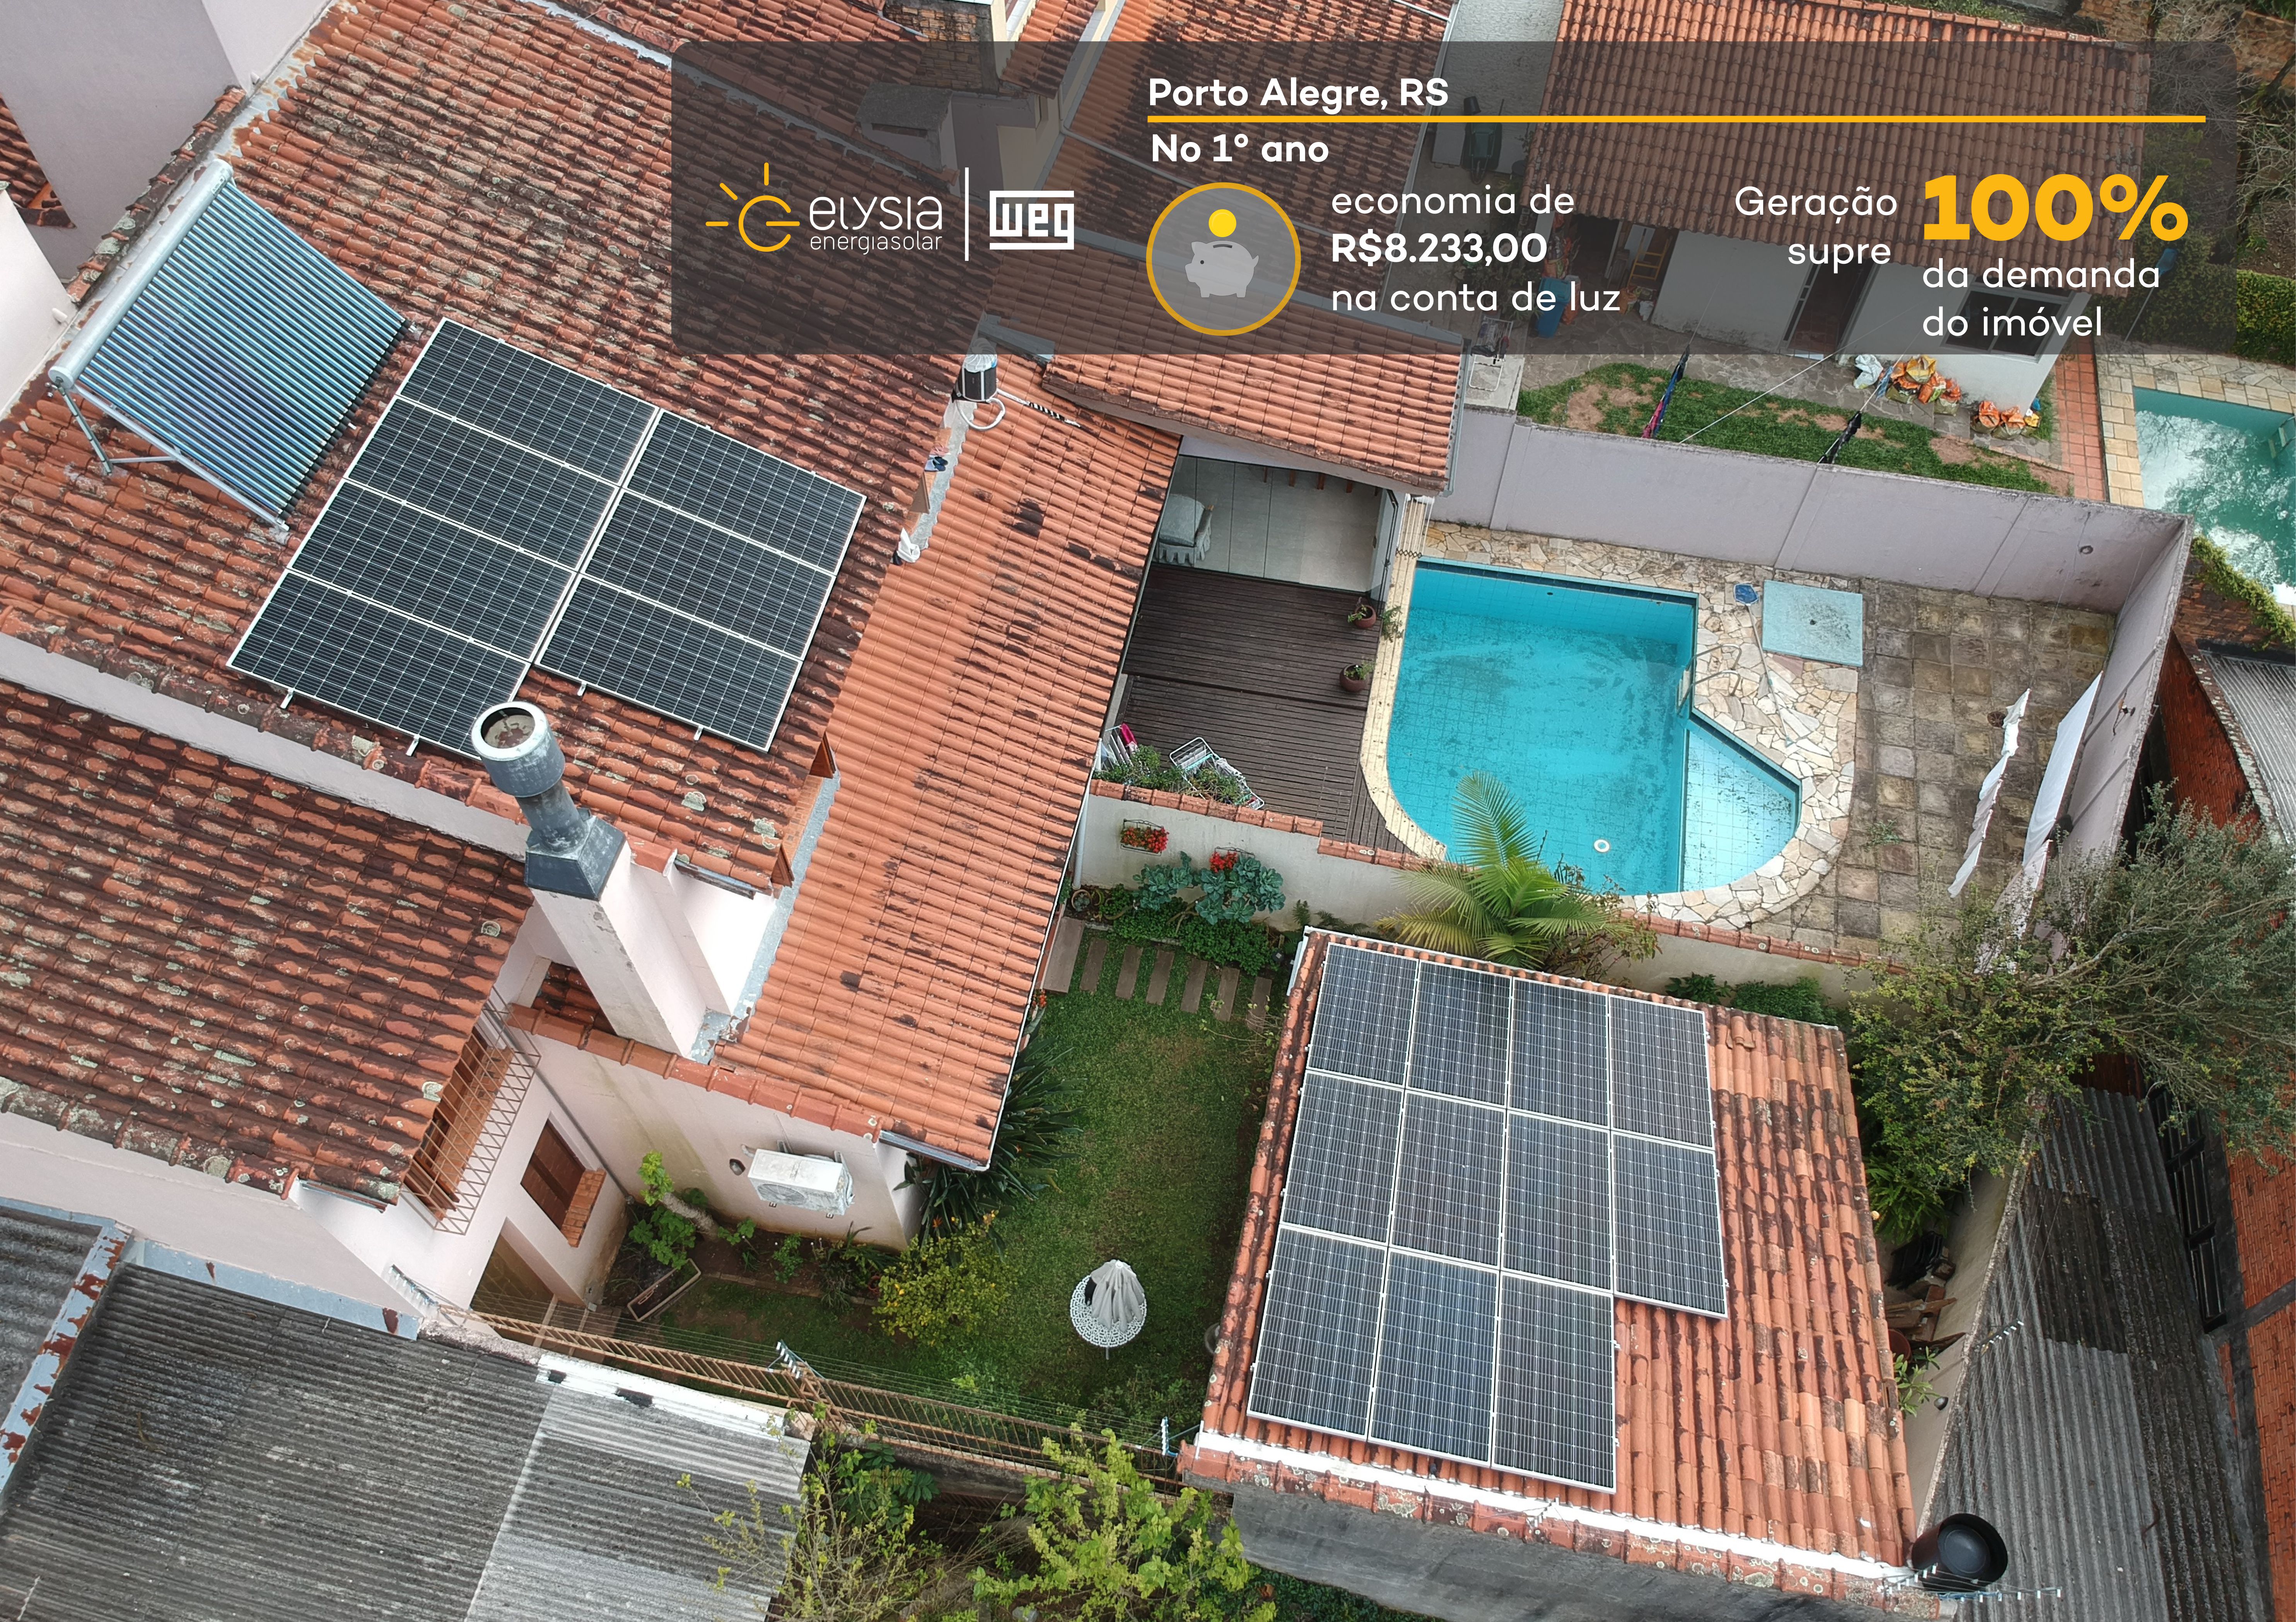 Energia fotovoltaica em Porto Alegre - Elysia energia solar Rio Grande do Sul